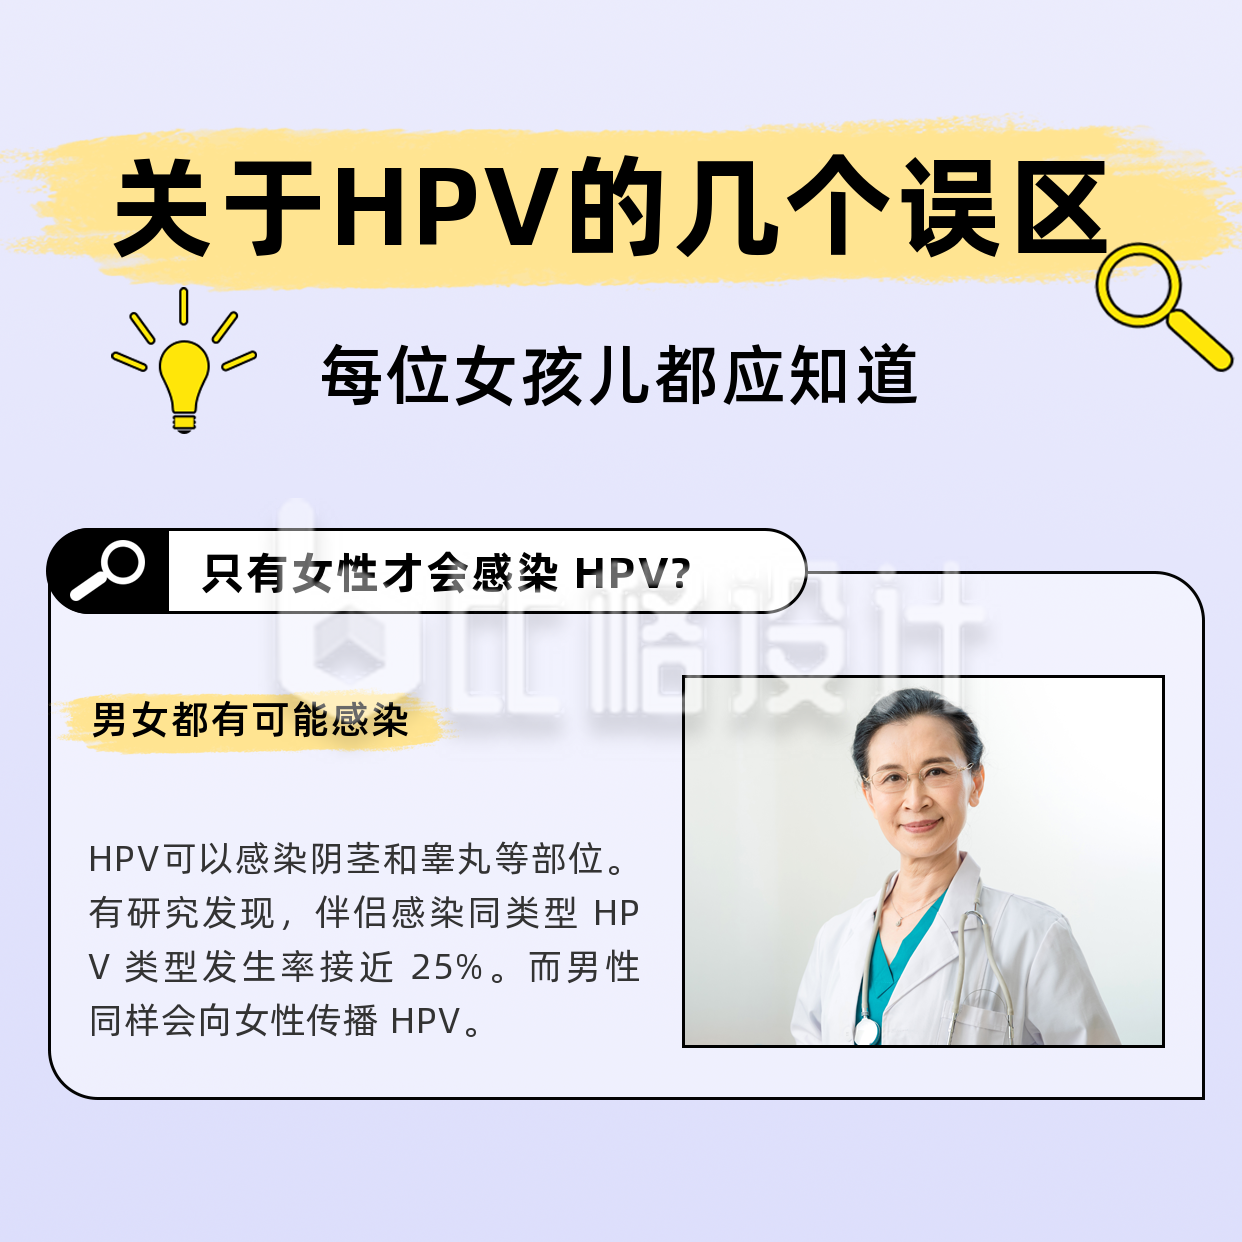 HPV疫苗接种小知识误区方形海报